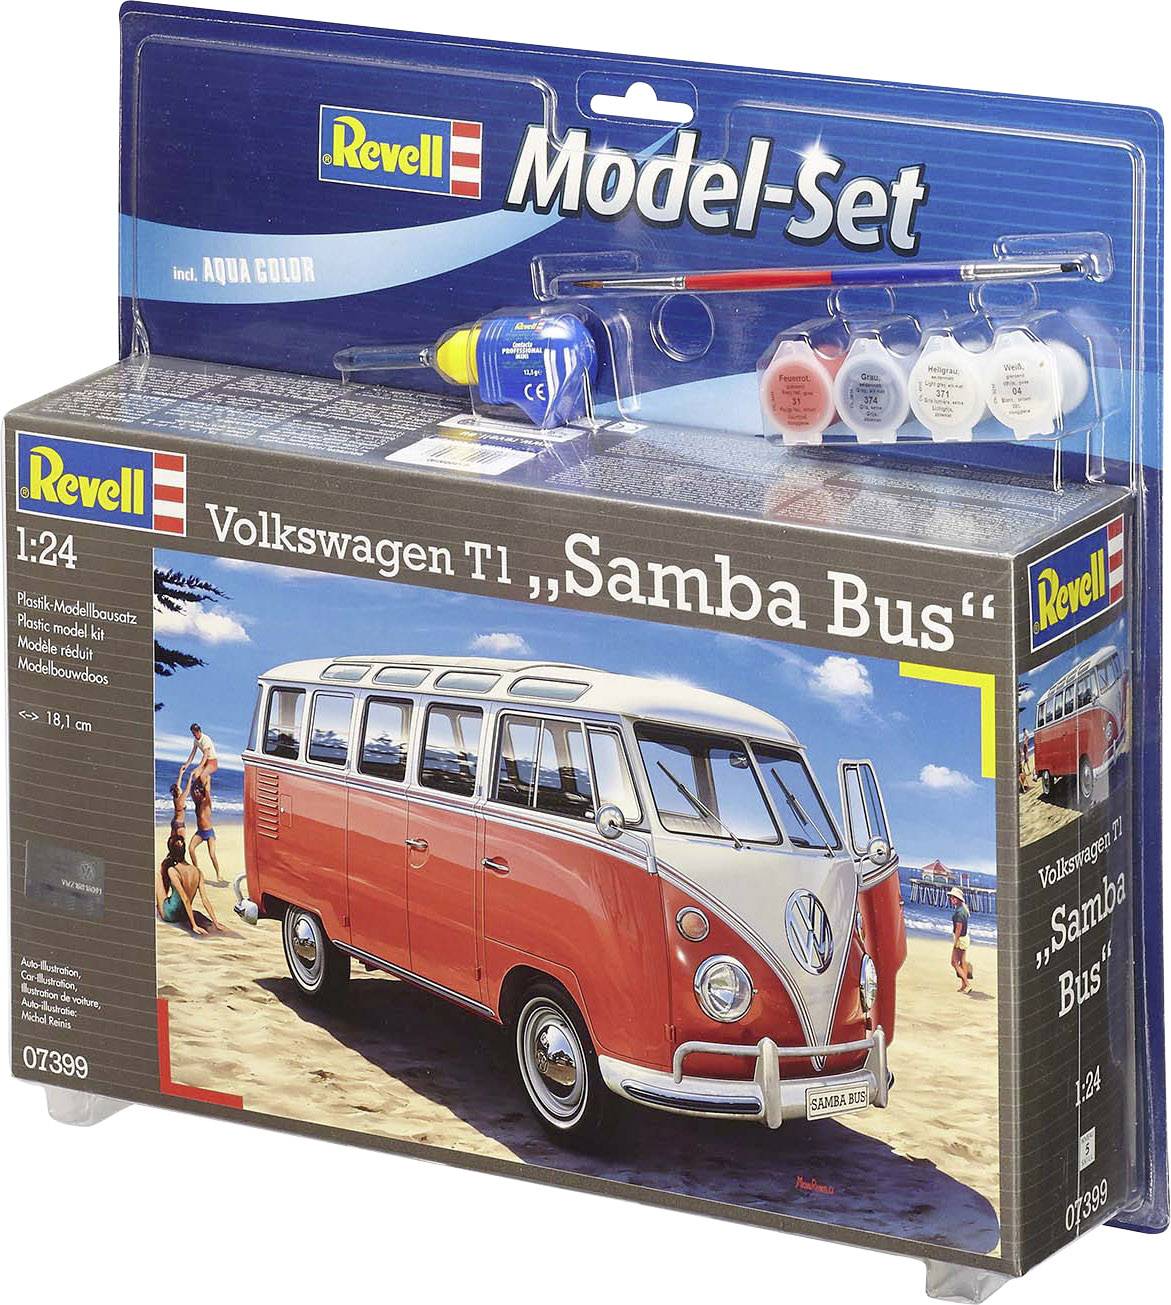 Vervallen cassette Zeeziekte Revell 67399 VW T1 Samba Car model assembly kit 1:24 | Conrad.com